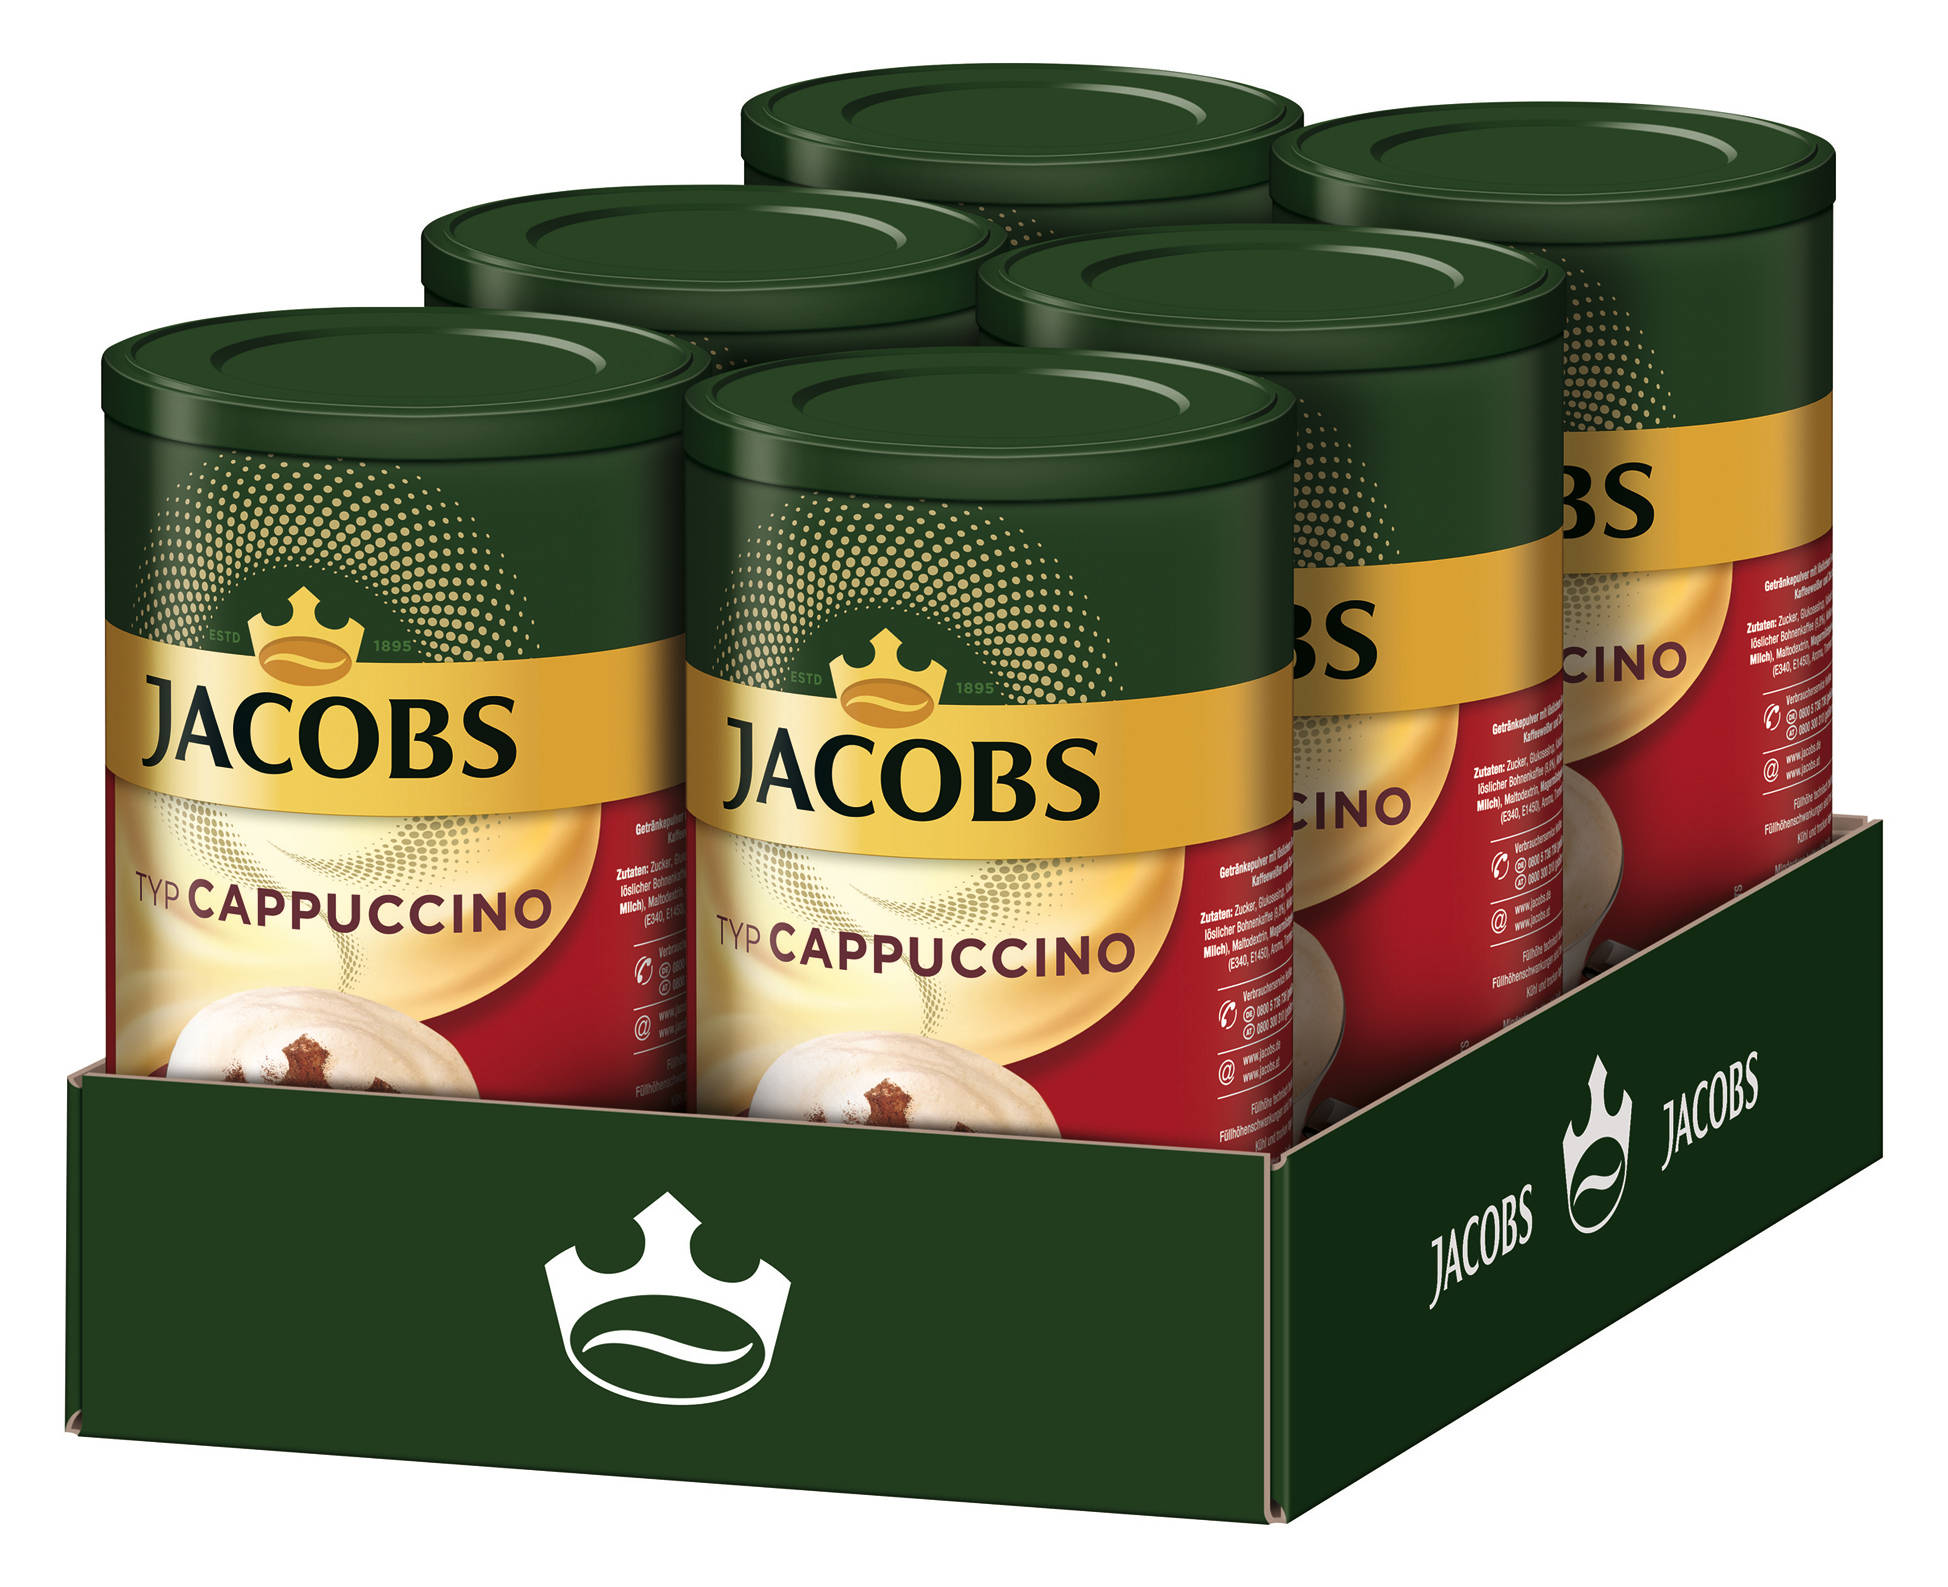 JACOBS Typ Cappuccino 6 x Wasser heißem Instantkaffee Dosen auflösen) 400 g (In